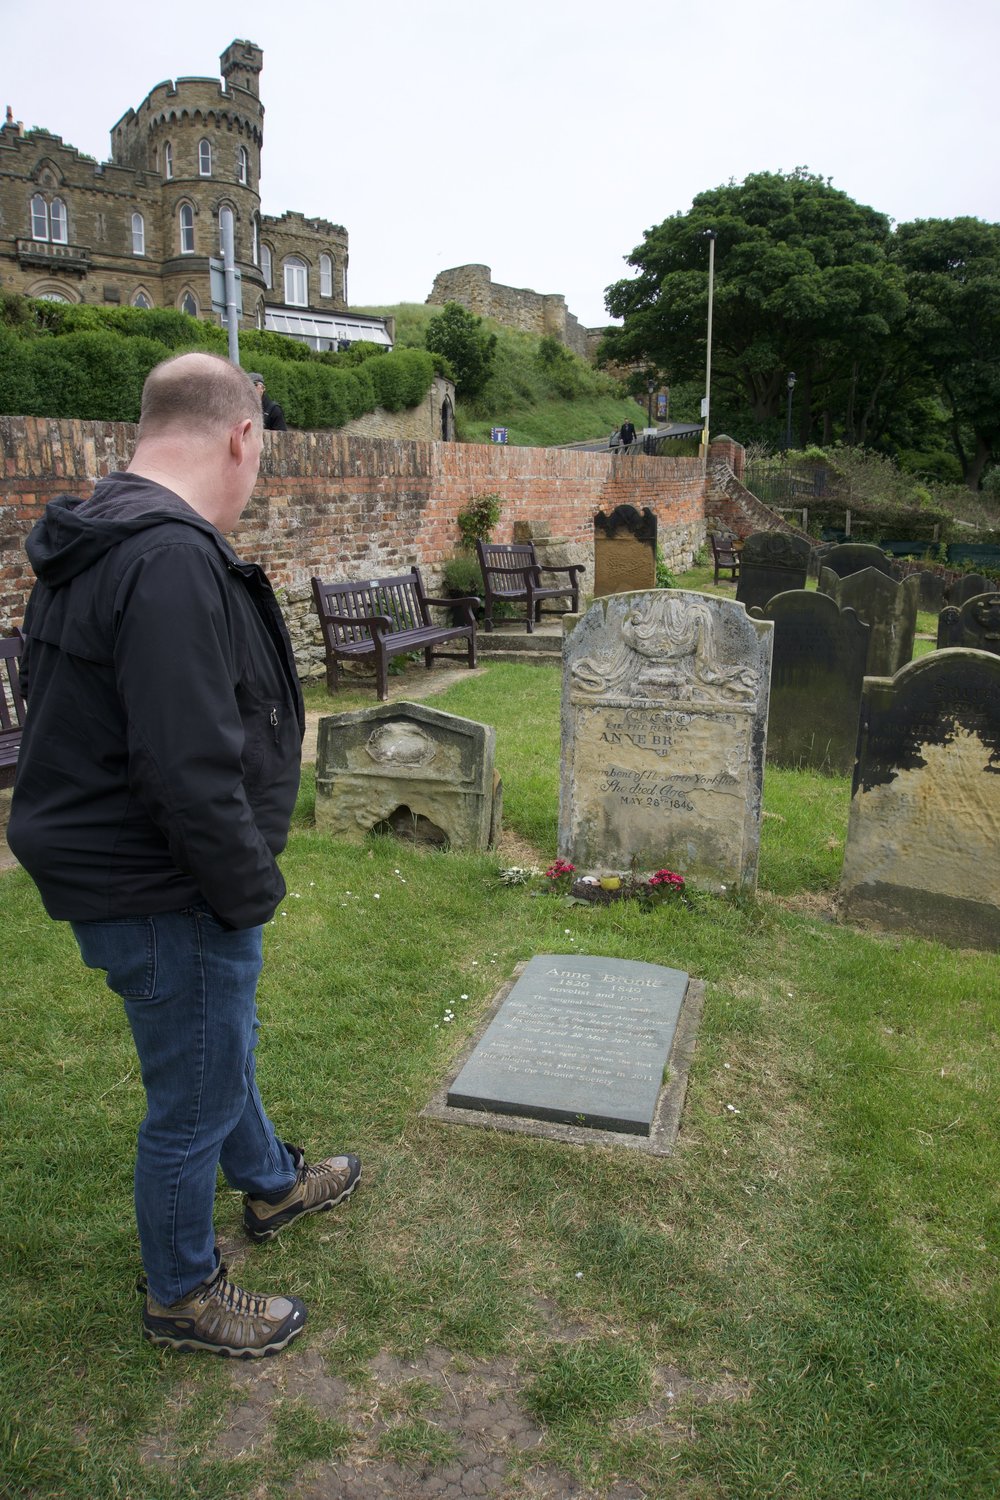 Anne Bronte grave